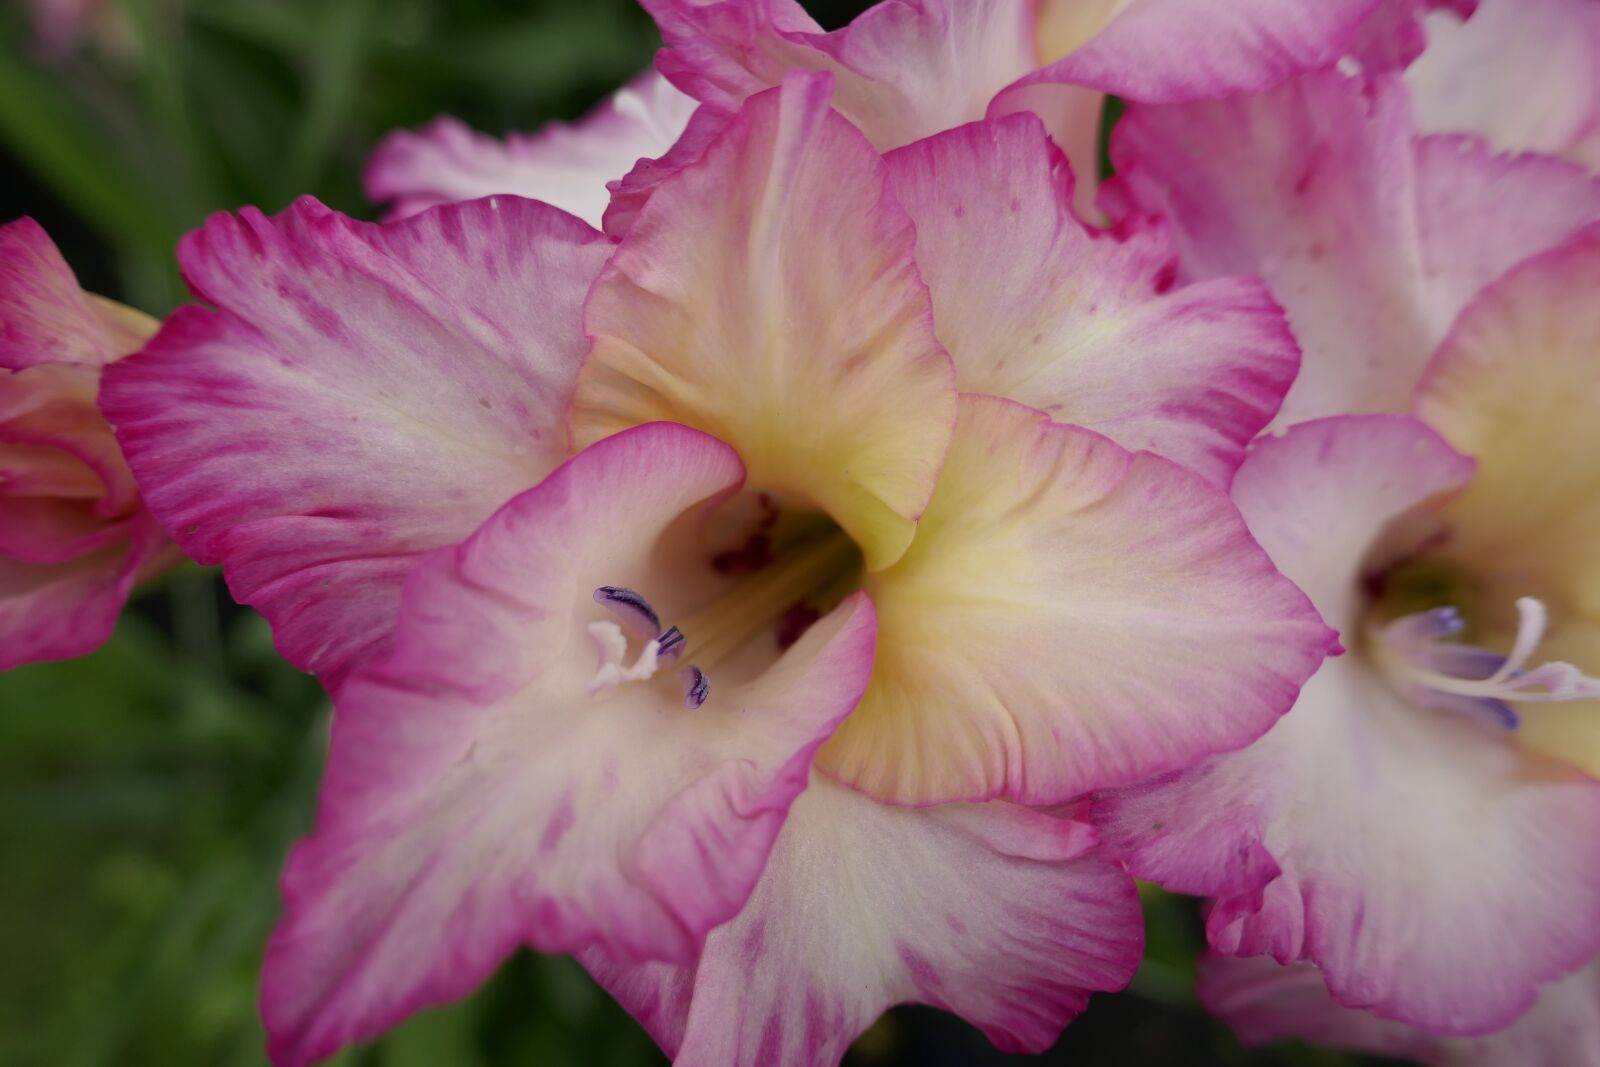 Panasonic DMC-TZ101 sample photo. Gladiolus, rose, flowers photography